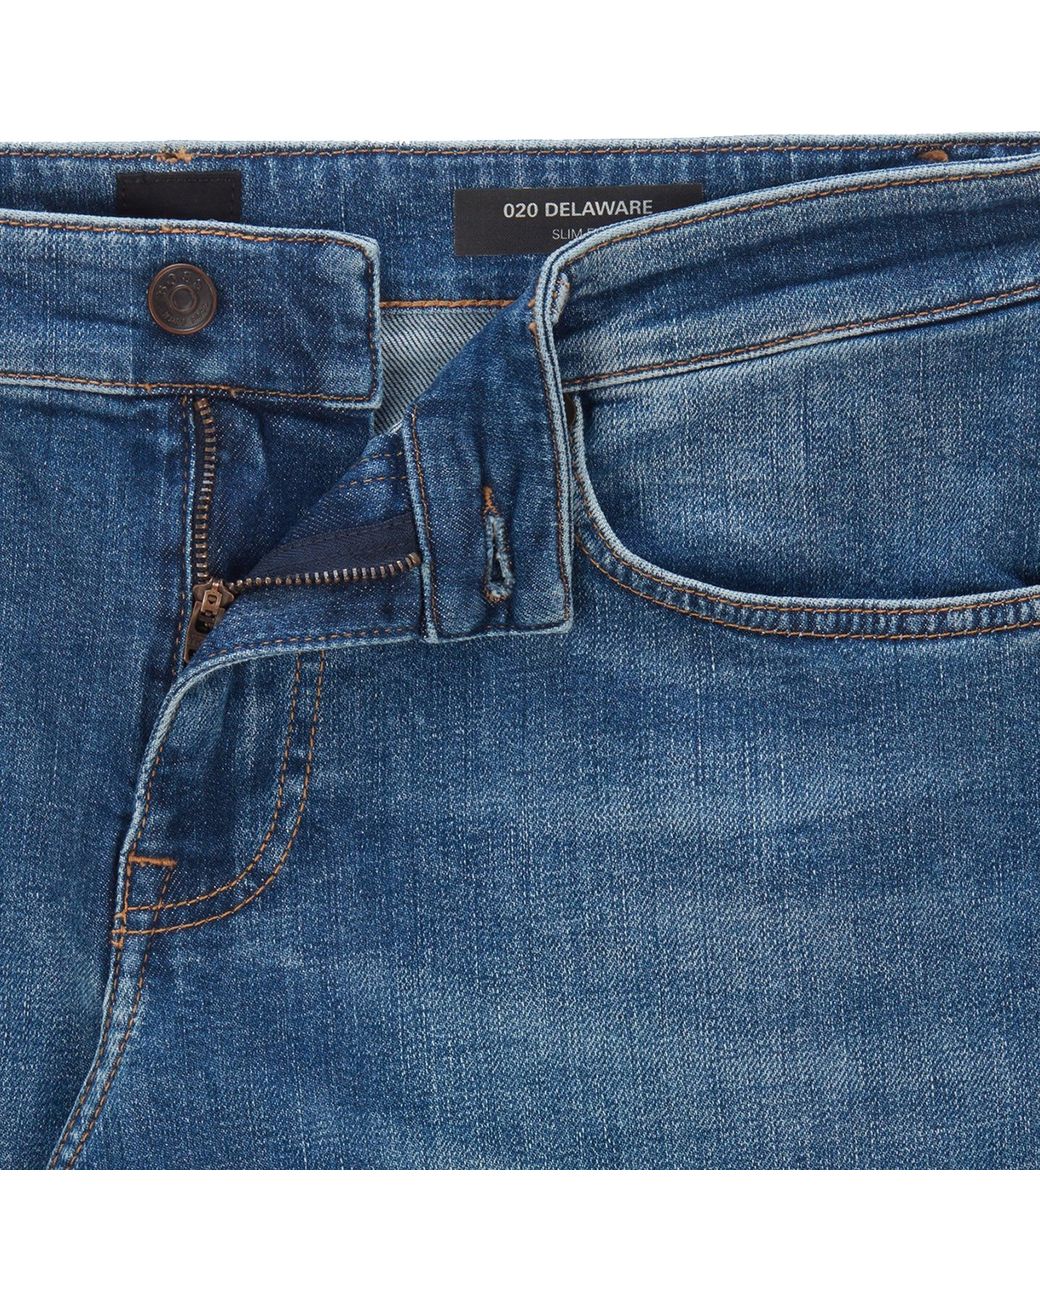 BOSS by HUGO BOSS Denim Delaware Slim Fit Jeans in Blue for Men | Lyst UK